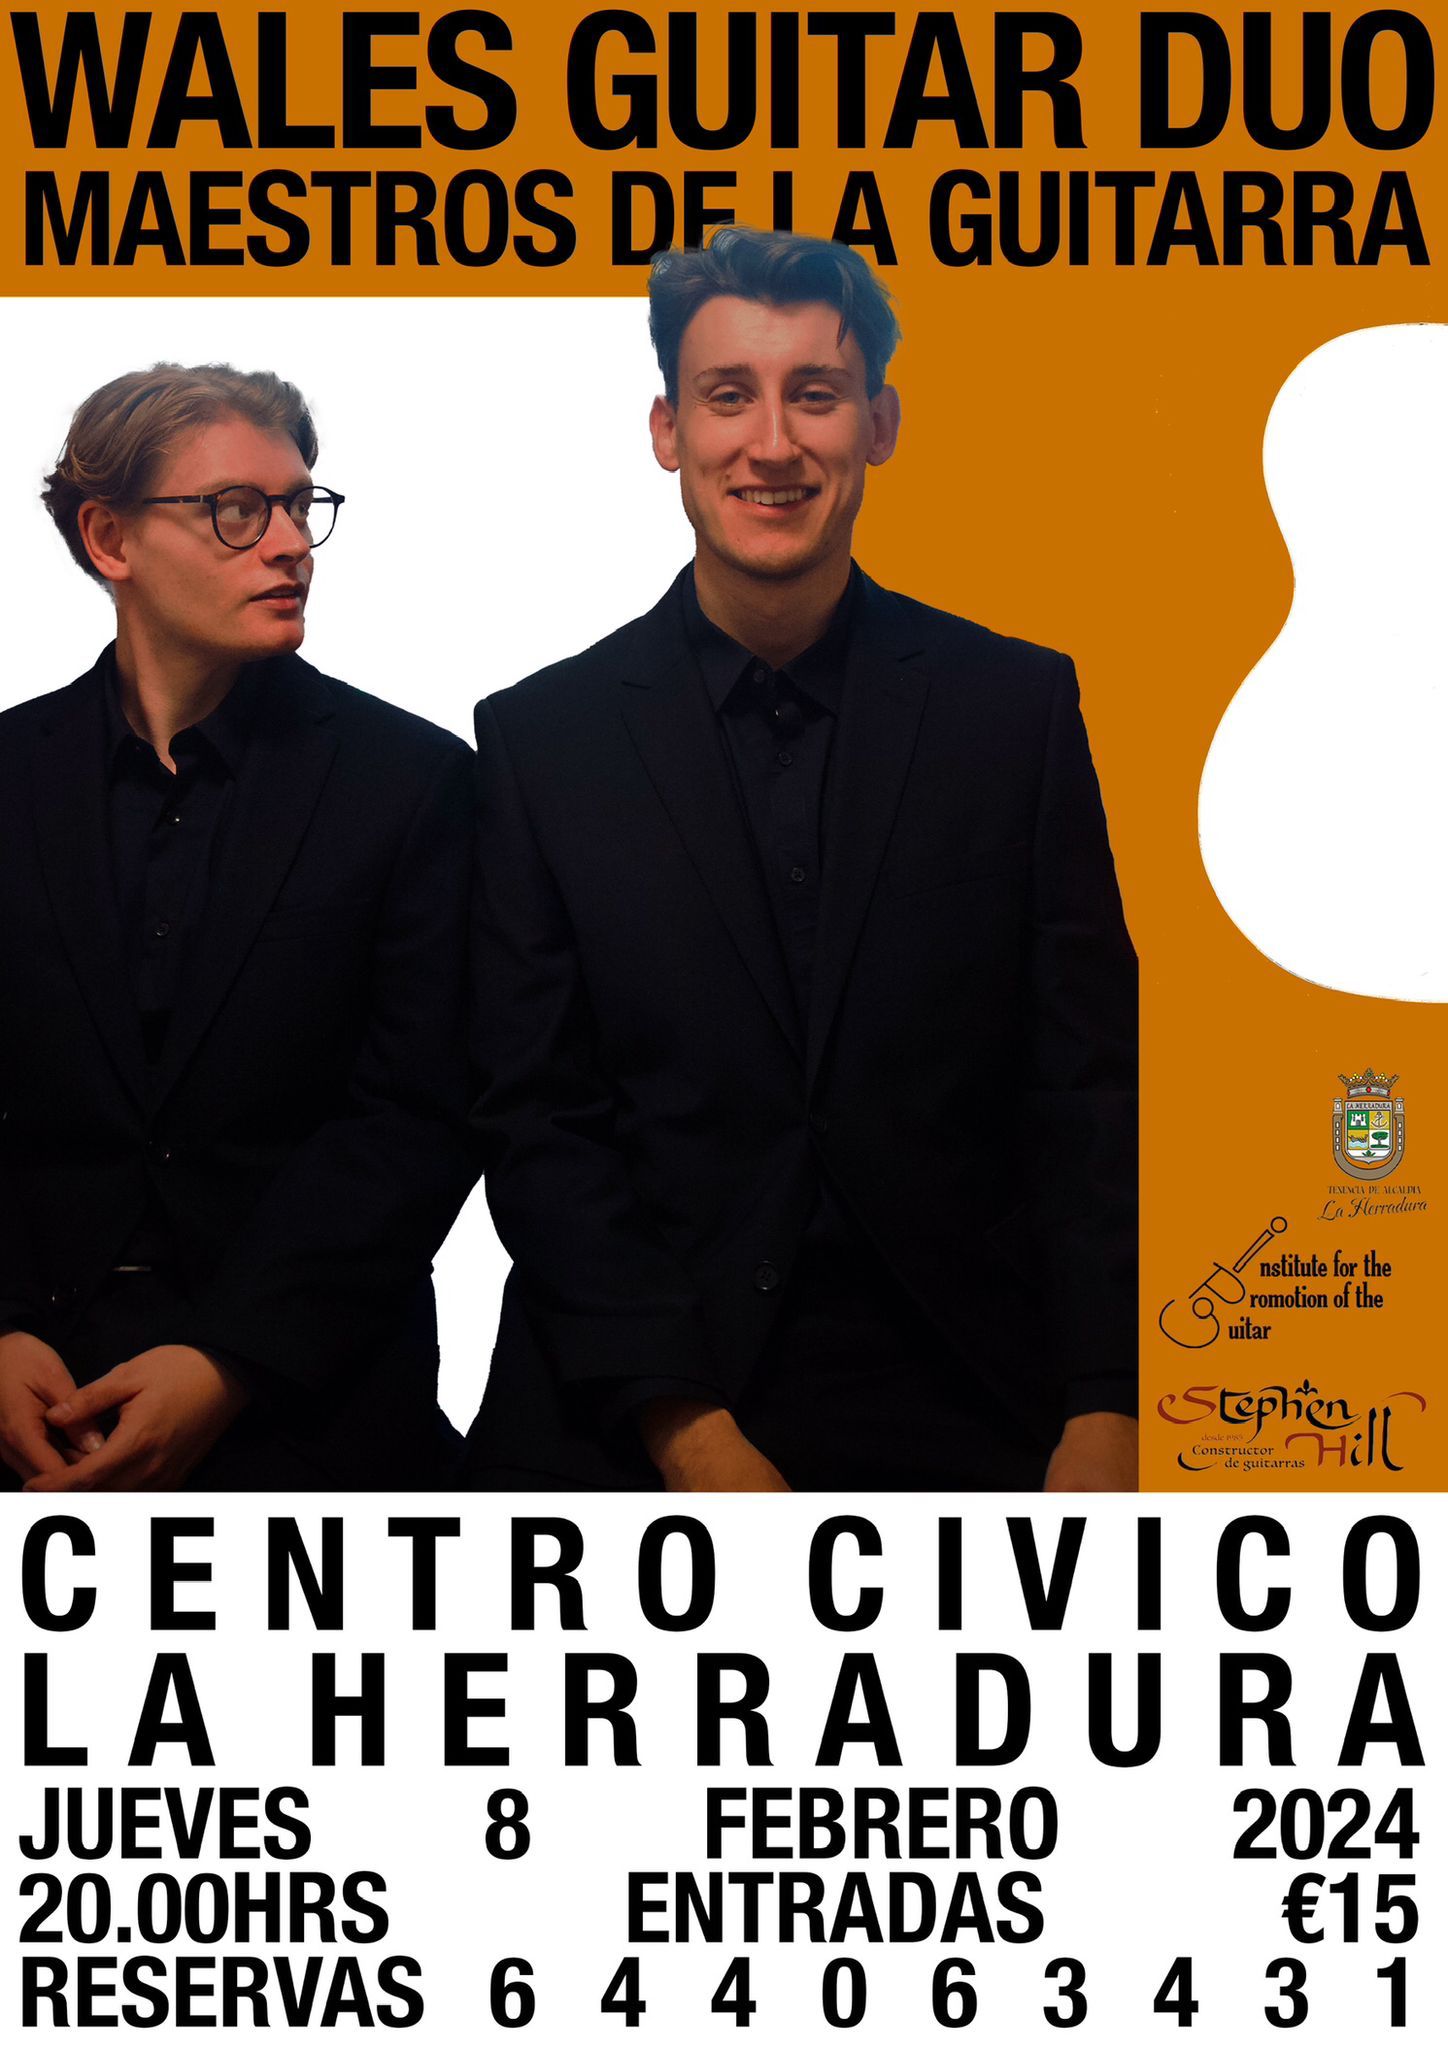 El Centro Cvico de La Herradura acoge hoy jueves el concierto del Do de Guitarra de Gales 